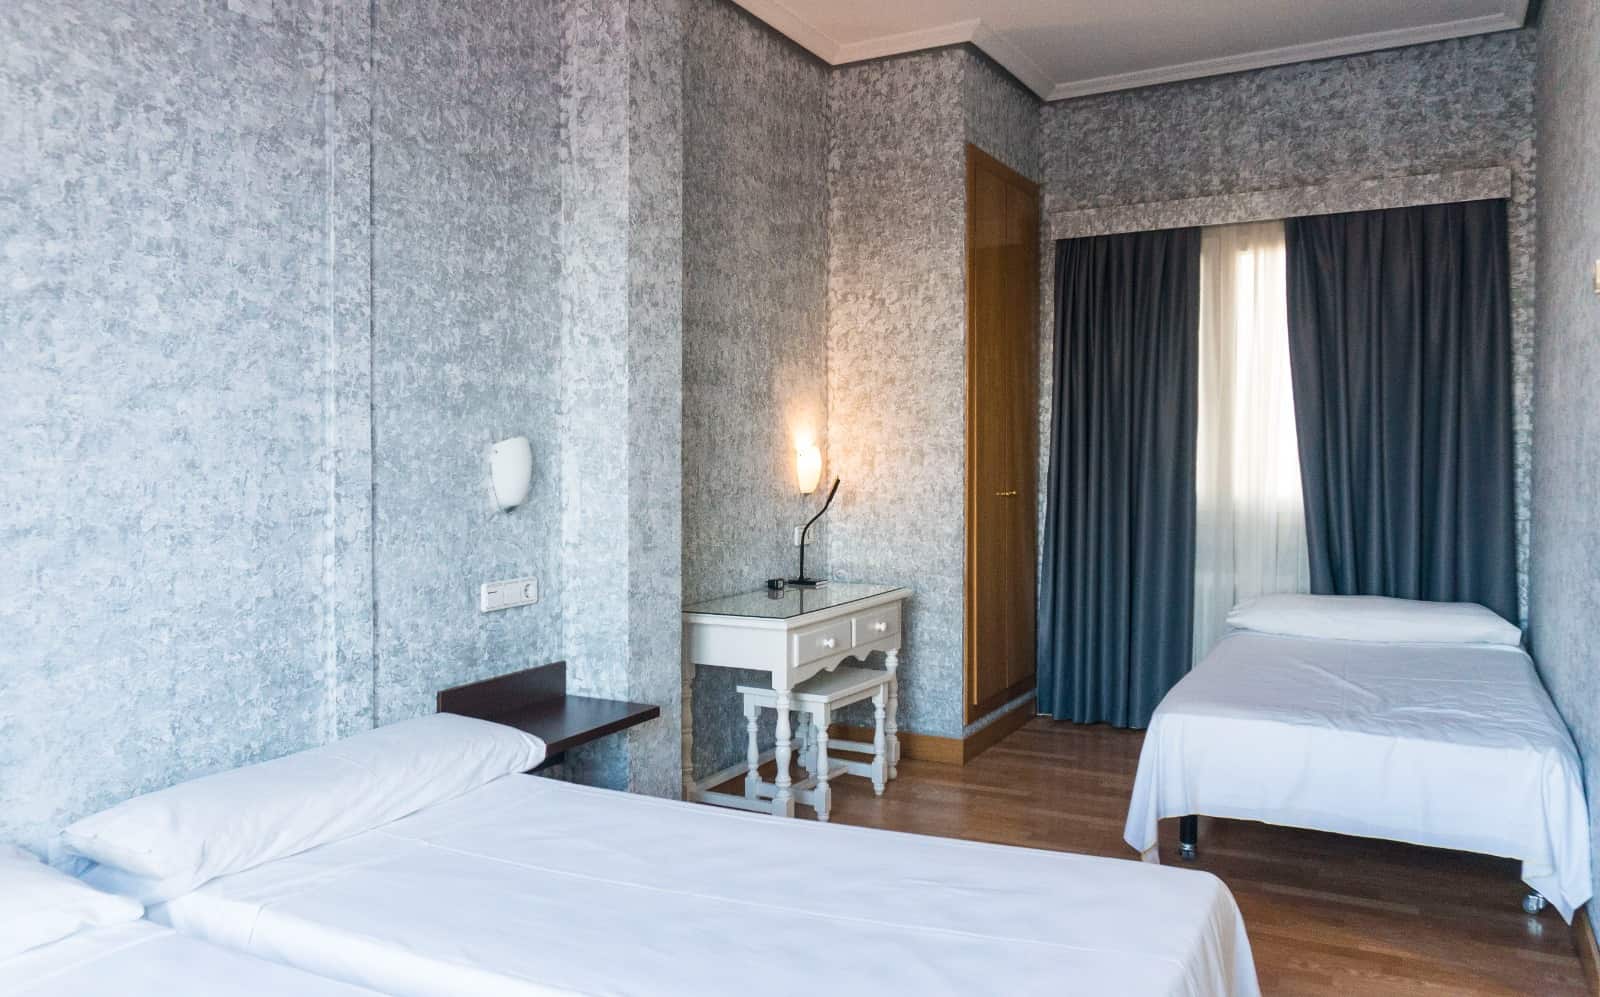 Hotel barato en Madrid - habitación triple